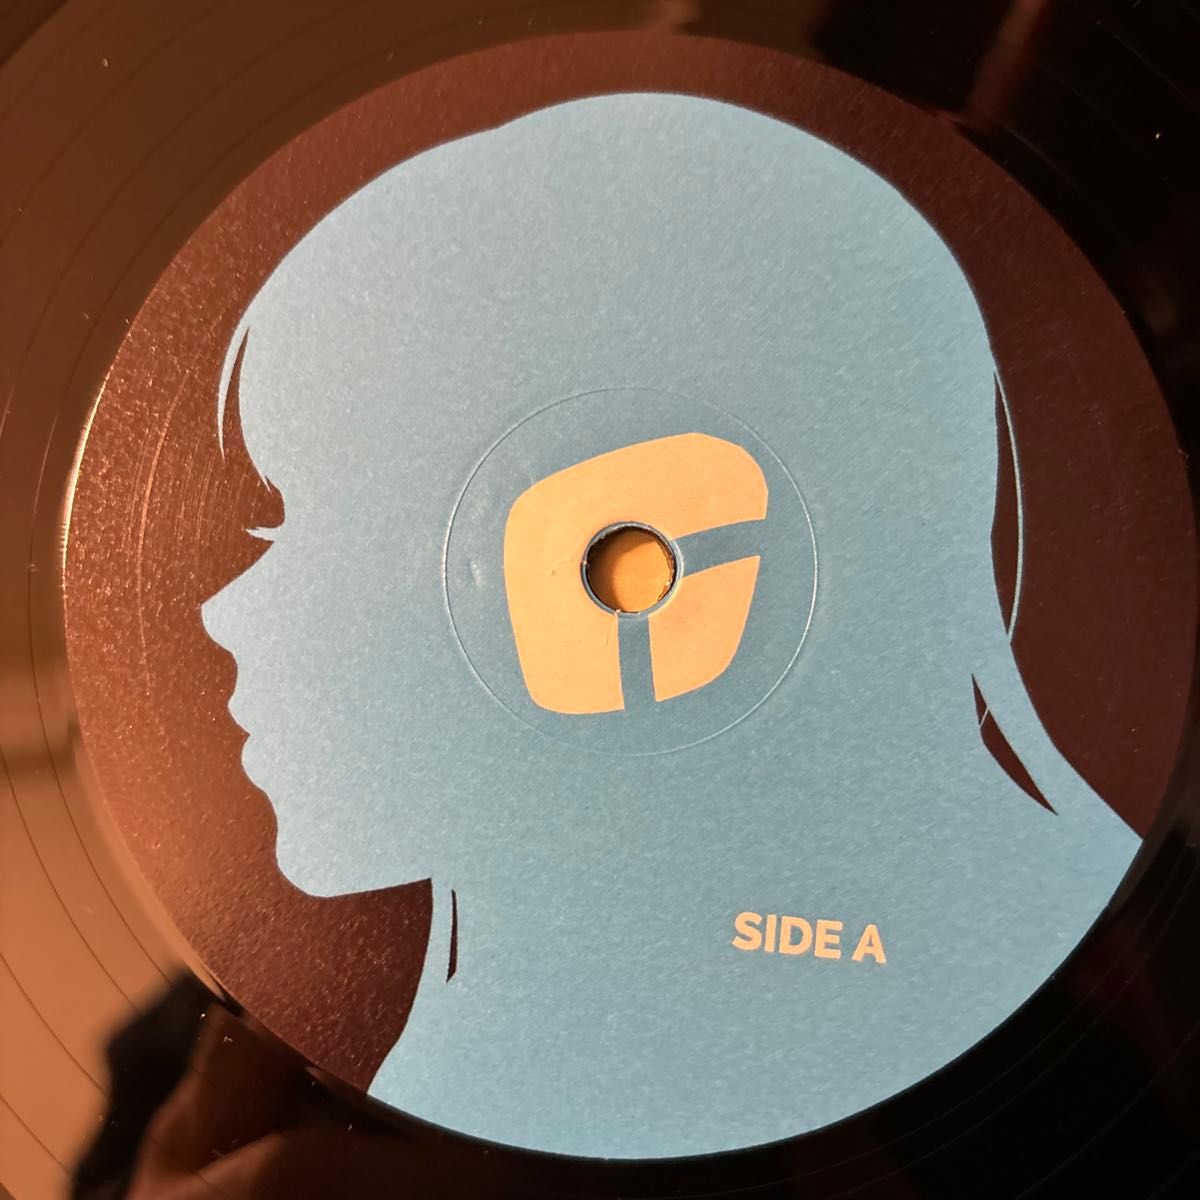 Garoad VA-11 HALL-A Official Soundtrack レコード LP vinyl アナログ ヴァルハラ